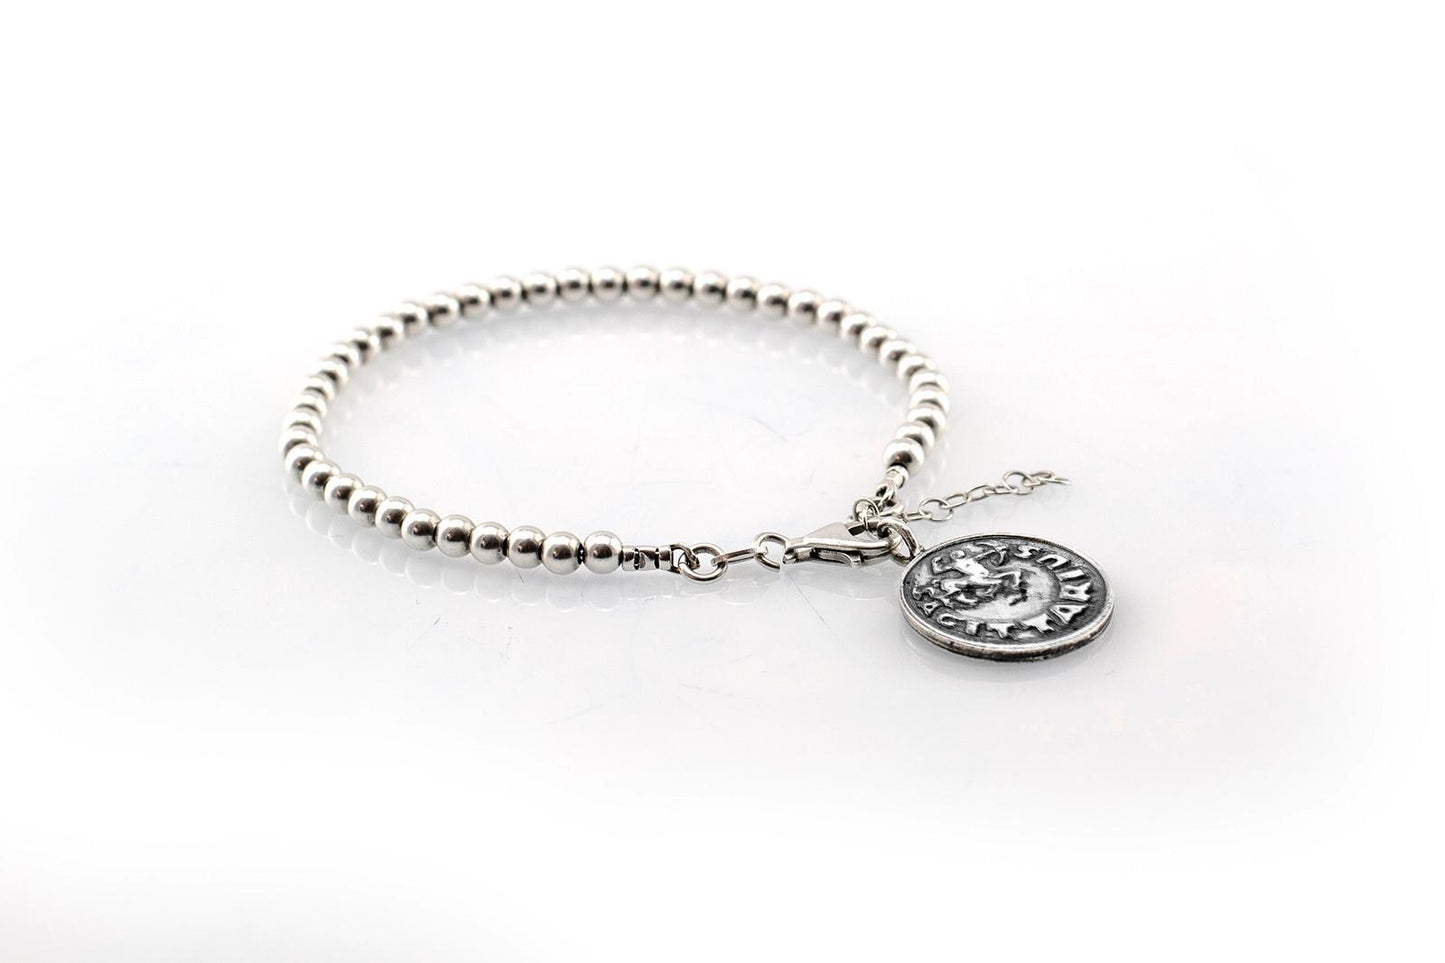 Sagittarius medallion with a Bead Bracelet -Zodiac jewelry -One of kind jewelry